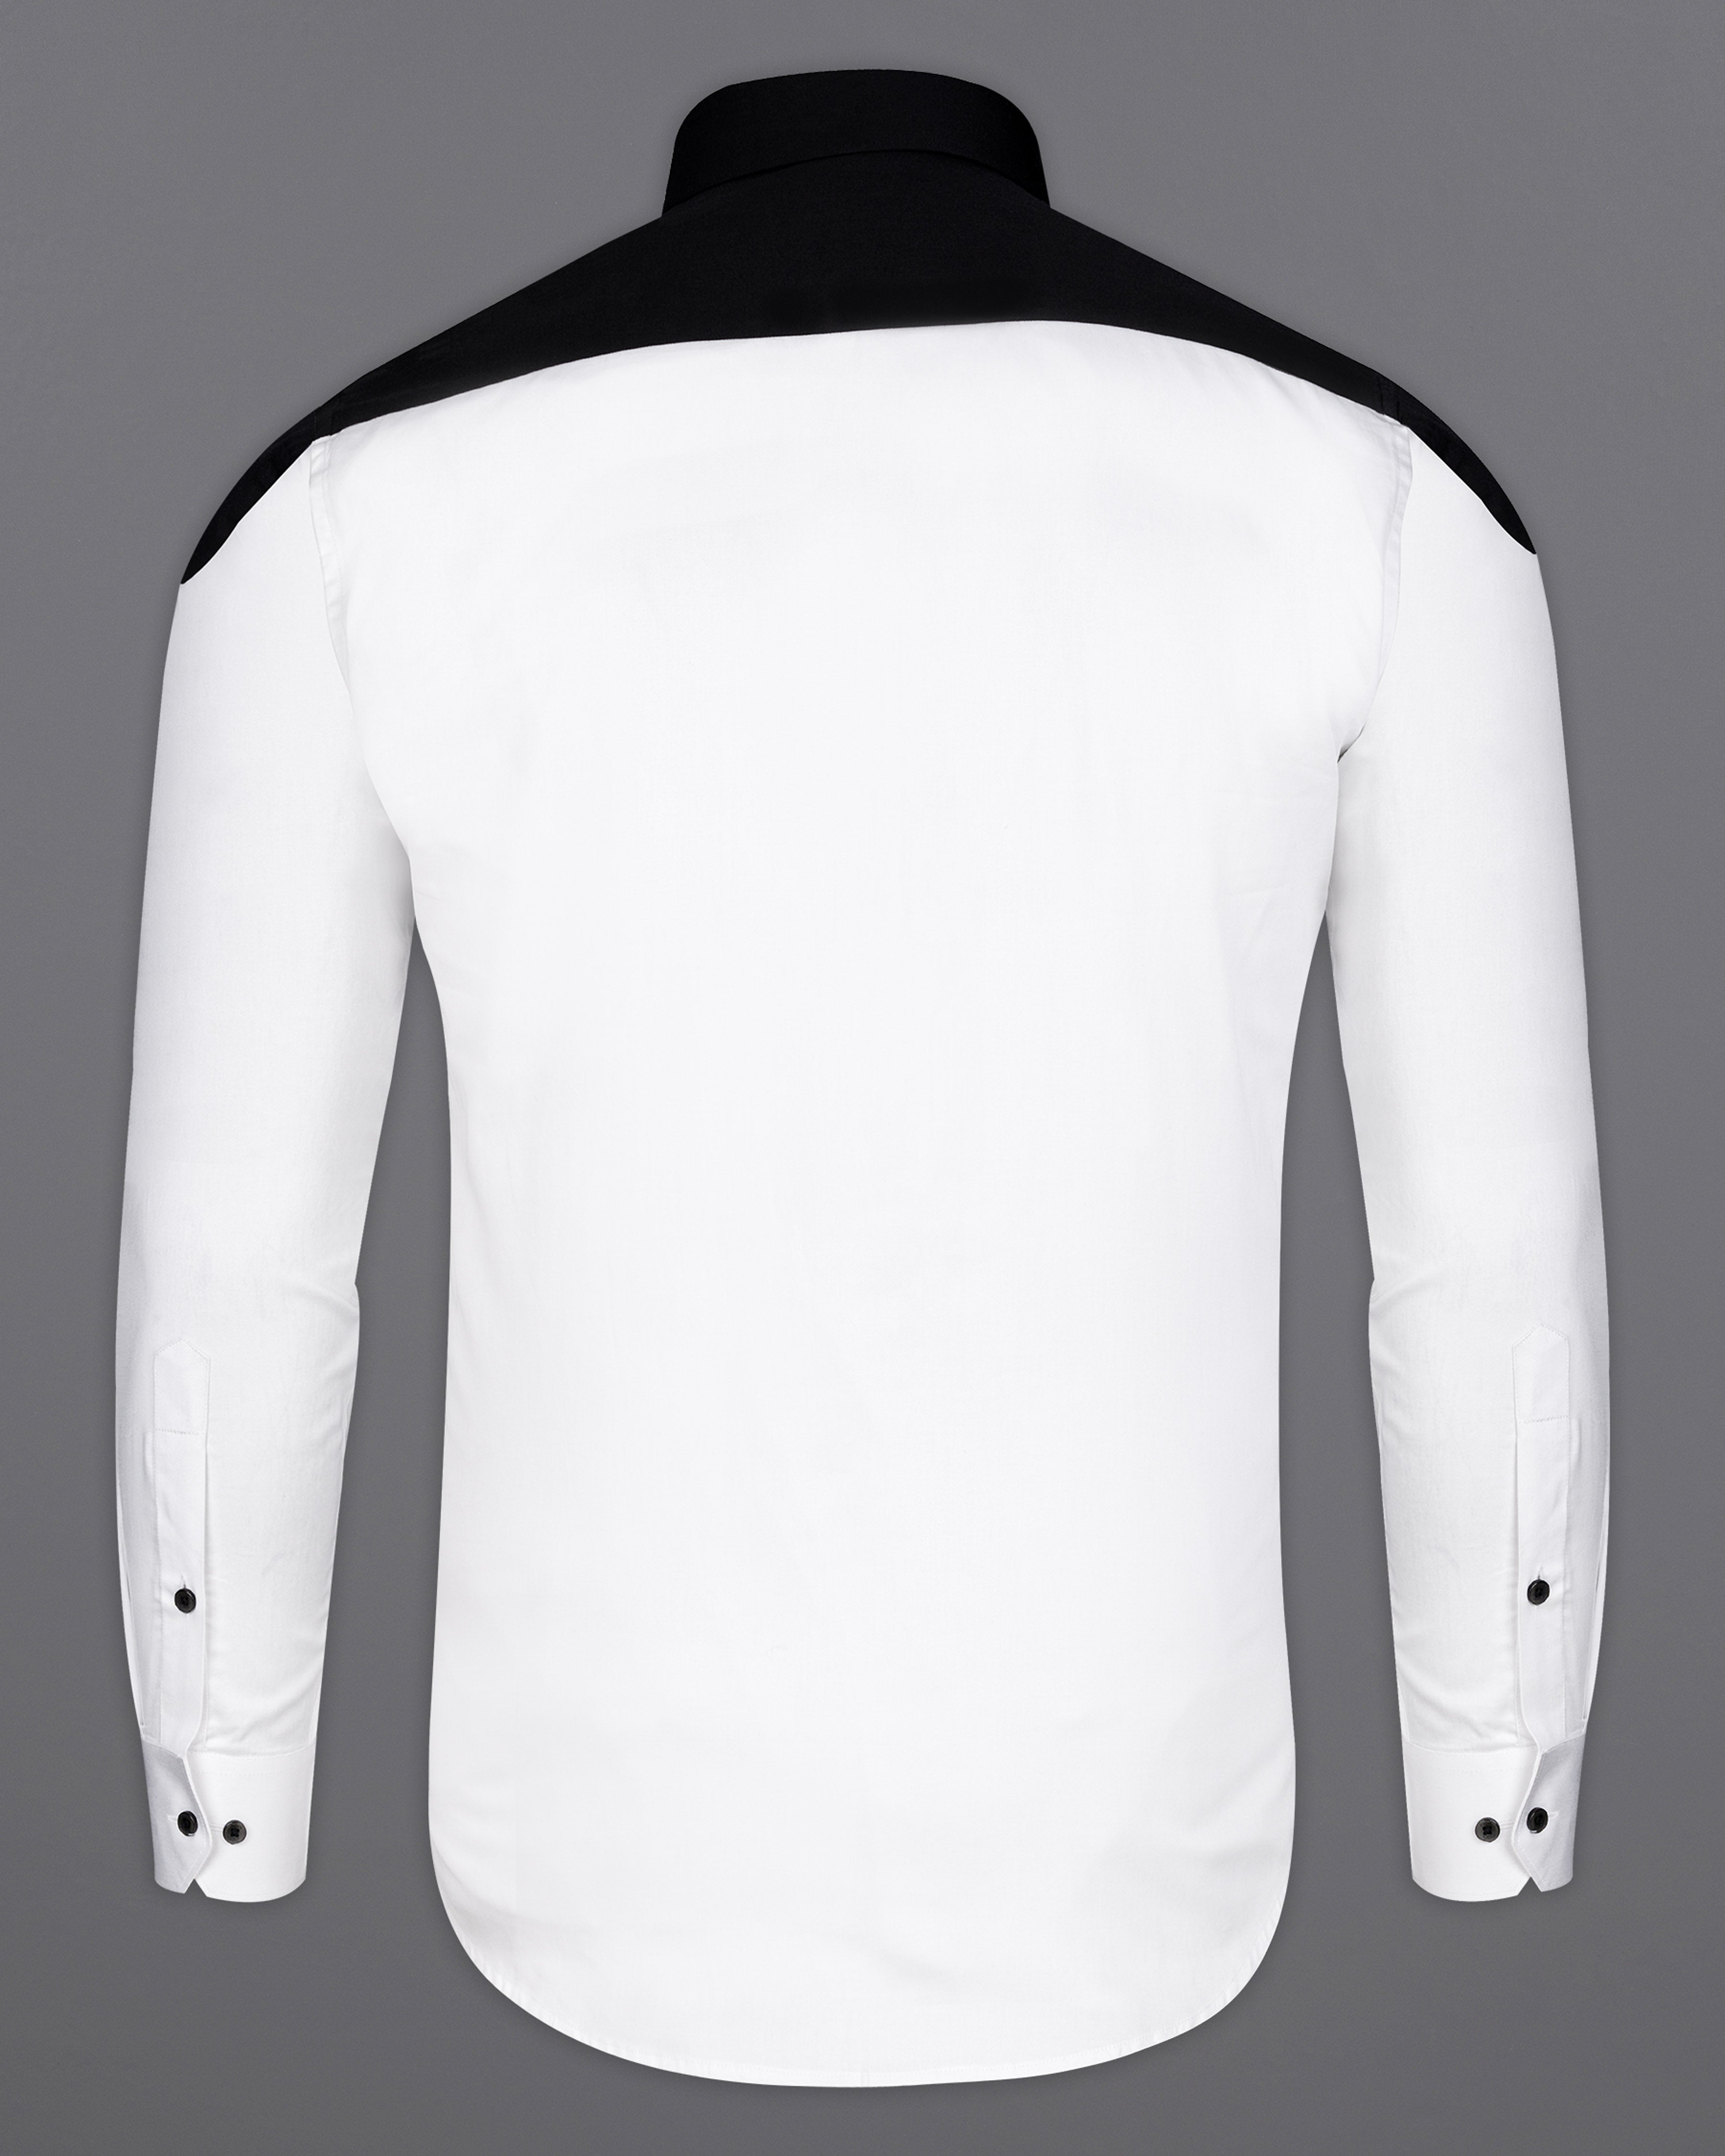 Bright White Subtle Sheen and Black Super Soft Premium Cotton Designer Shirt 9548-BLK-P586-38,9548-BLK-P586-H-38,9548-BLK-P586-39,9548-BLK-P586-H-39,9548-BLK-P586-40,9548-BLK-P586-H-40,9548-BLK-P586-42,9548-BLK-P586-H-42,9548-BLK-P586-44,9548-BLK-P586-H-44,9548-BLK-P586-46,9548-BLK-P586-H-46,9548-BLK-P586-48,9548-BLK-P586-H-48,9548-BLK-P586-50,9548-BLK-P586-H-50,9548-BLK-P586-52,9548-BLK-P586-H-52